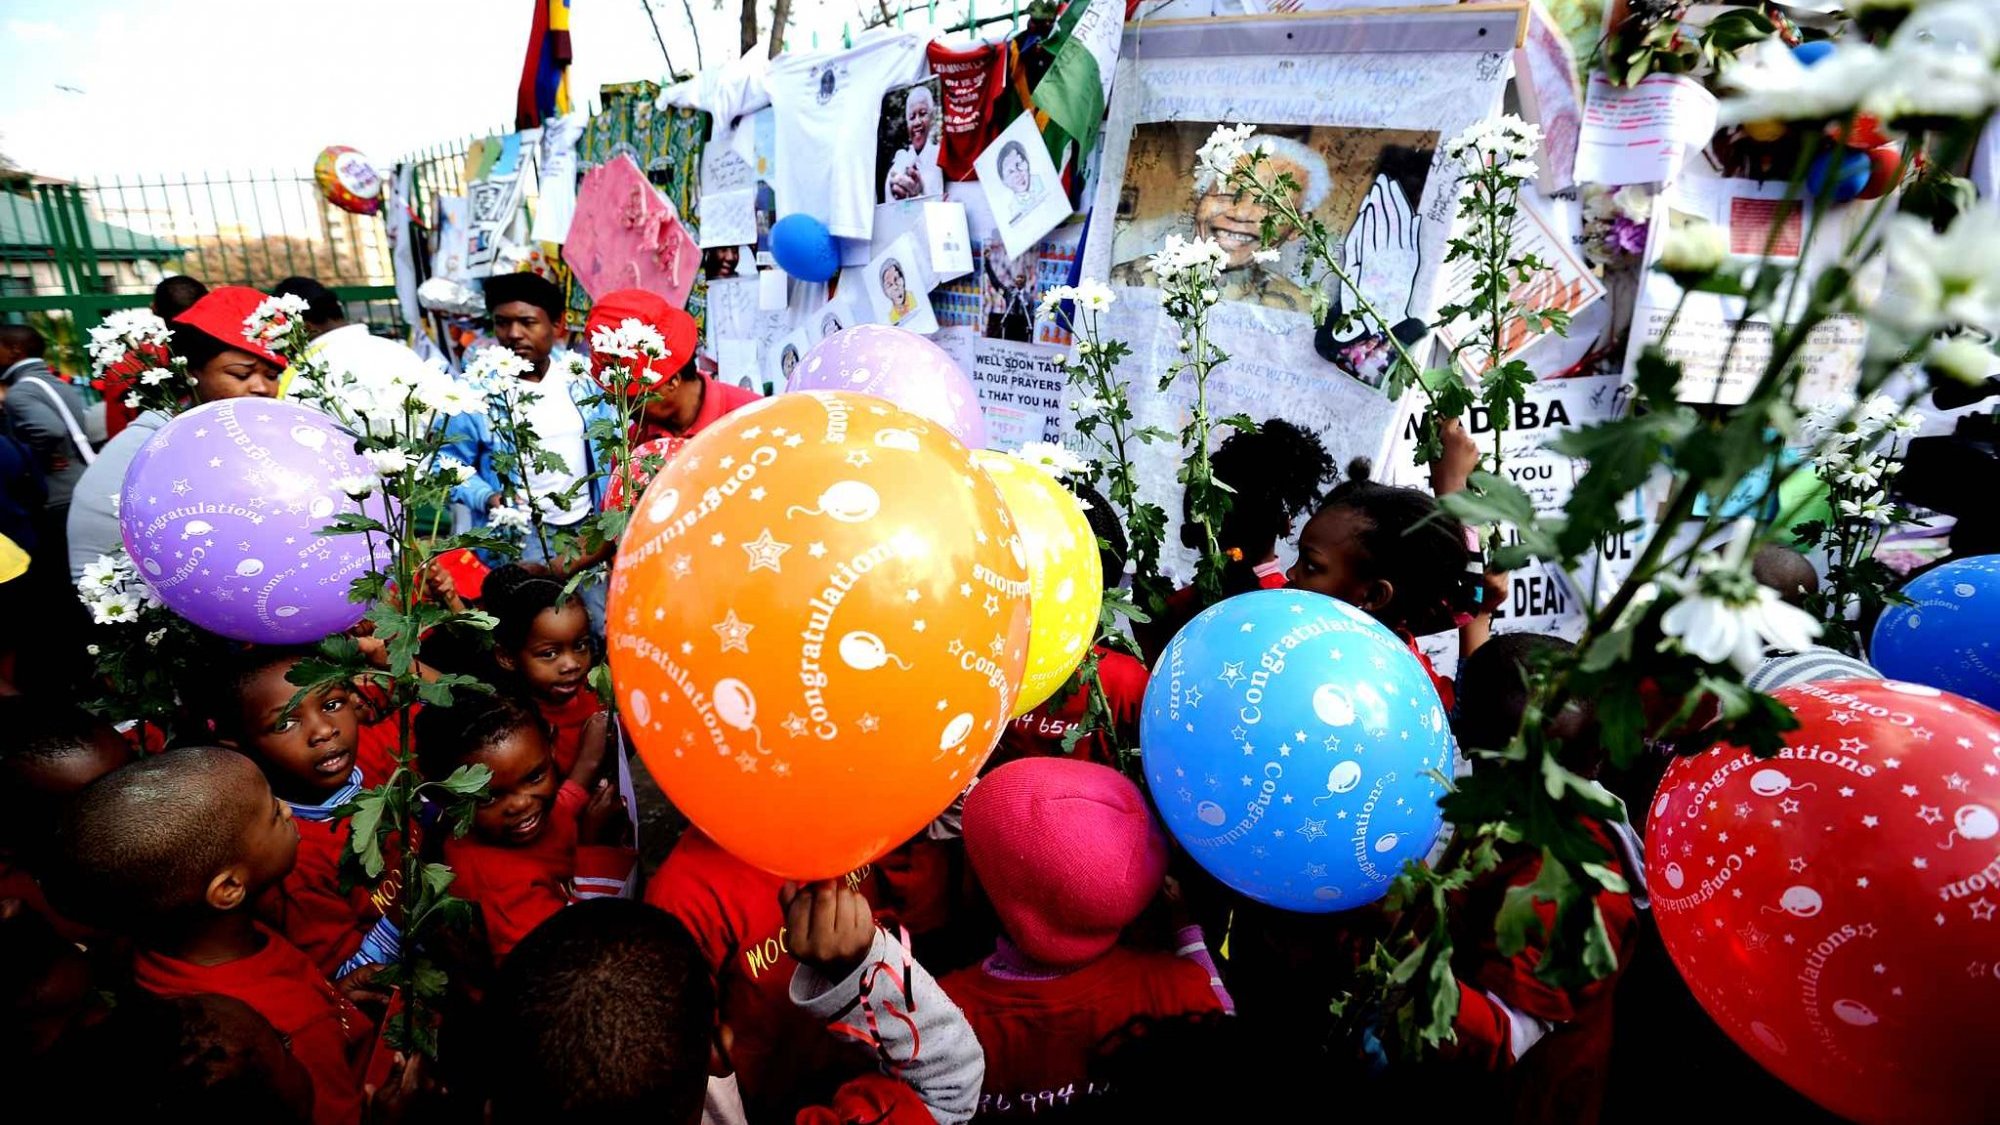 A Durban, des fleurs, des ballons... pour rendre hommage à Mandela
